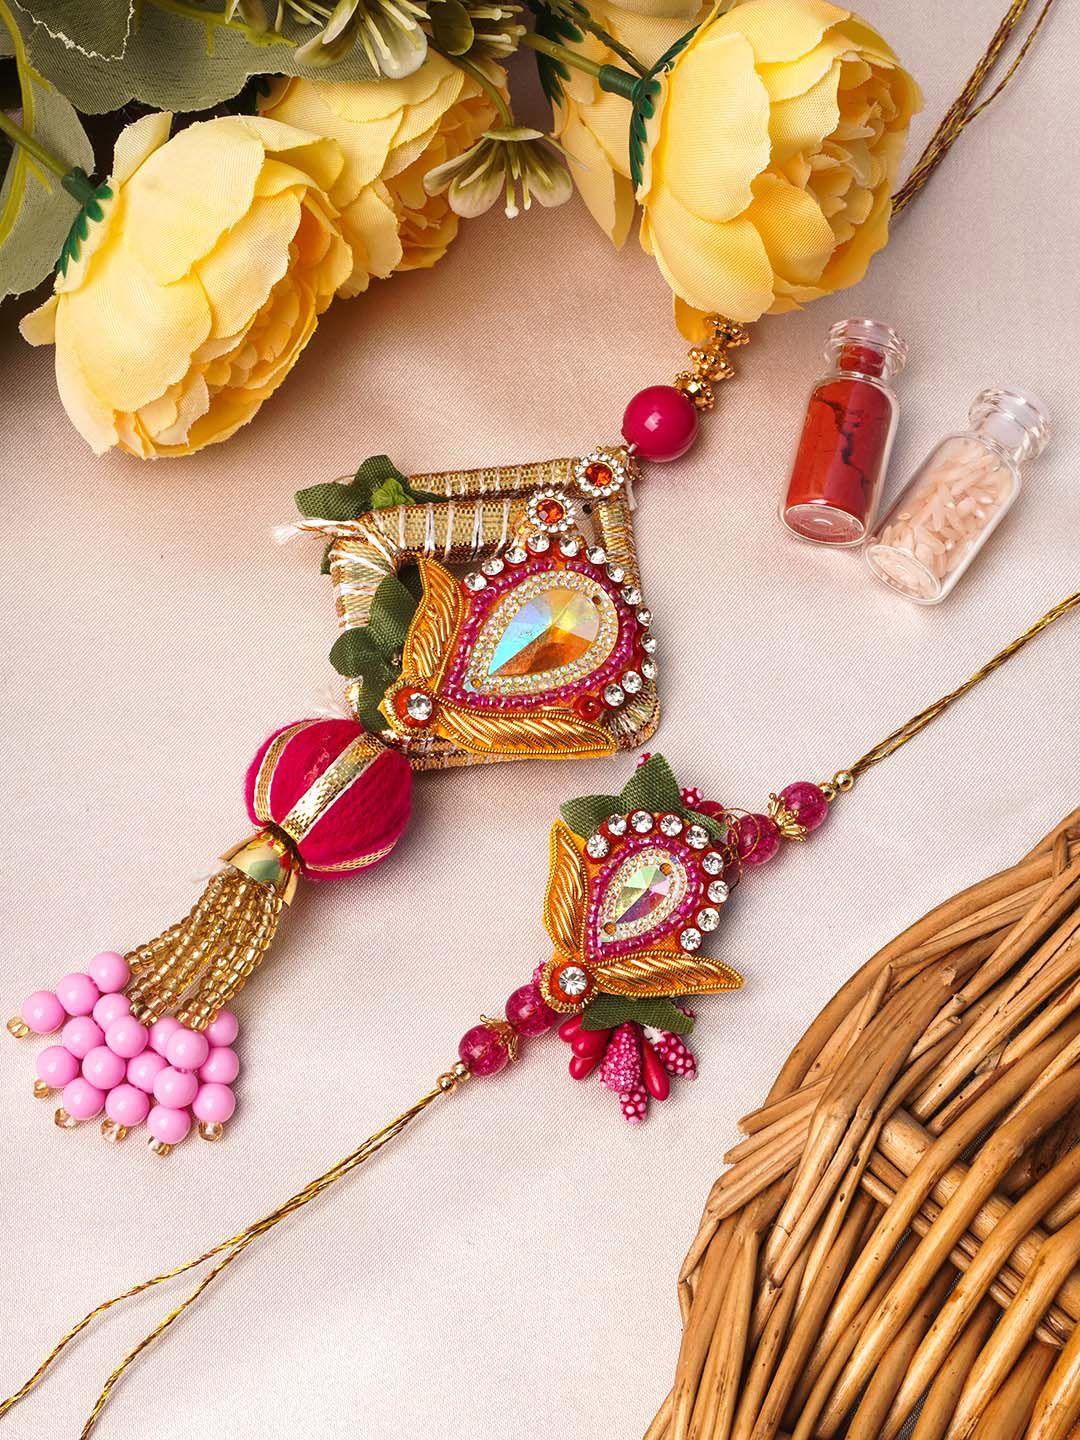 urmika set of 2 gold-toned white & pink stone-studded & beaded rakhi with roli chawal